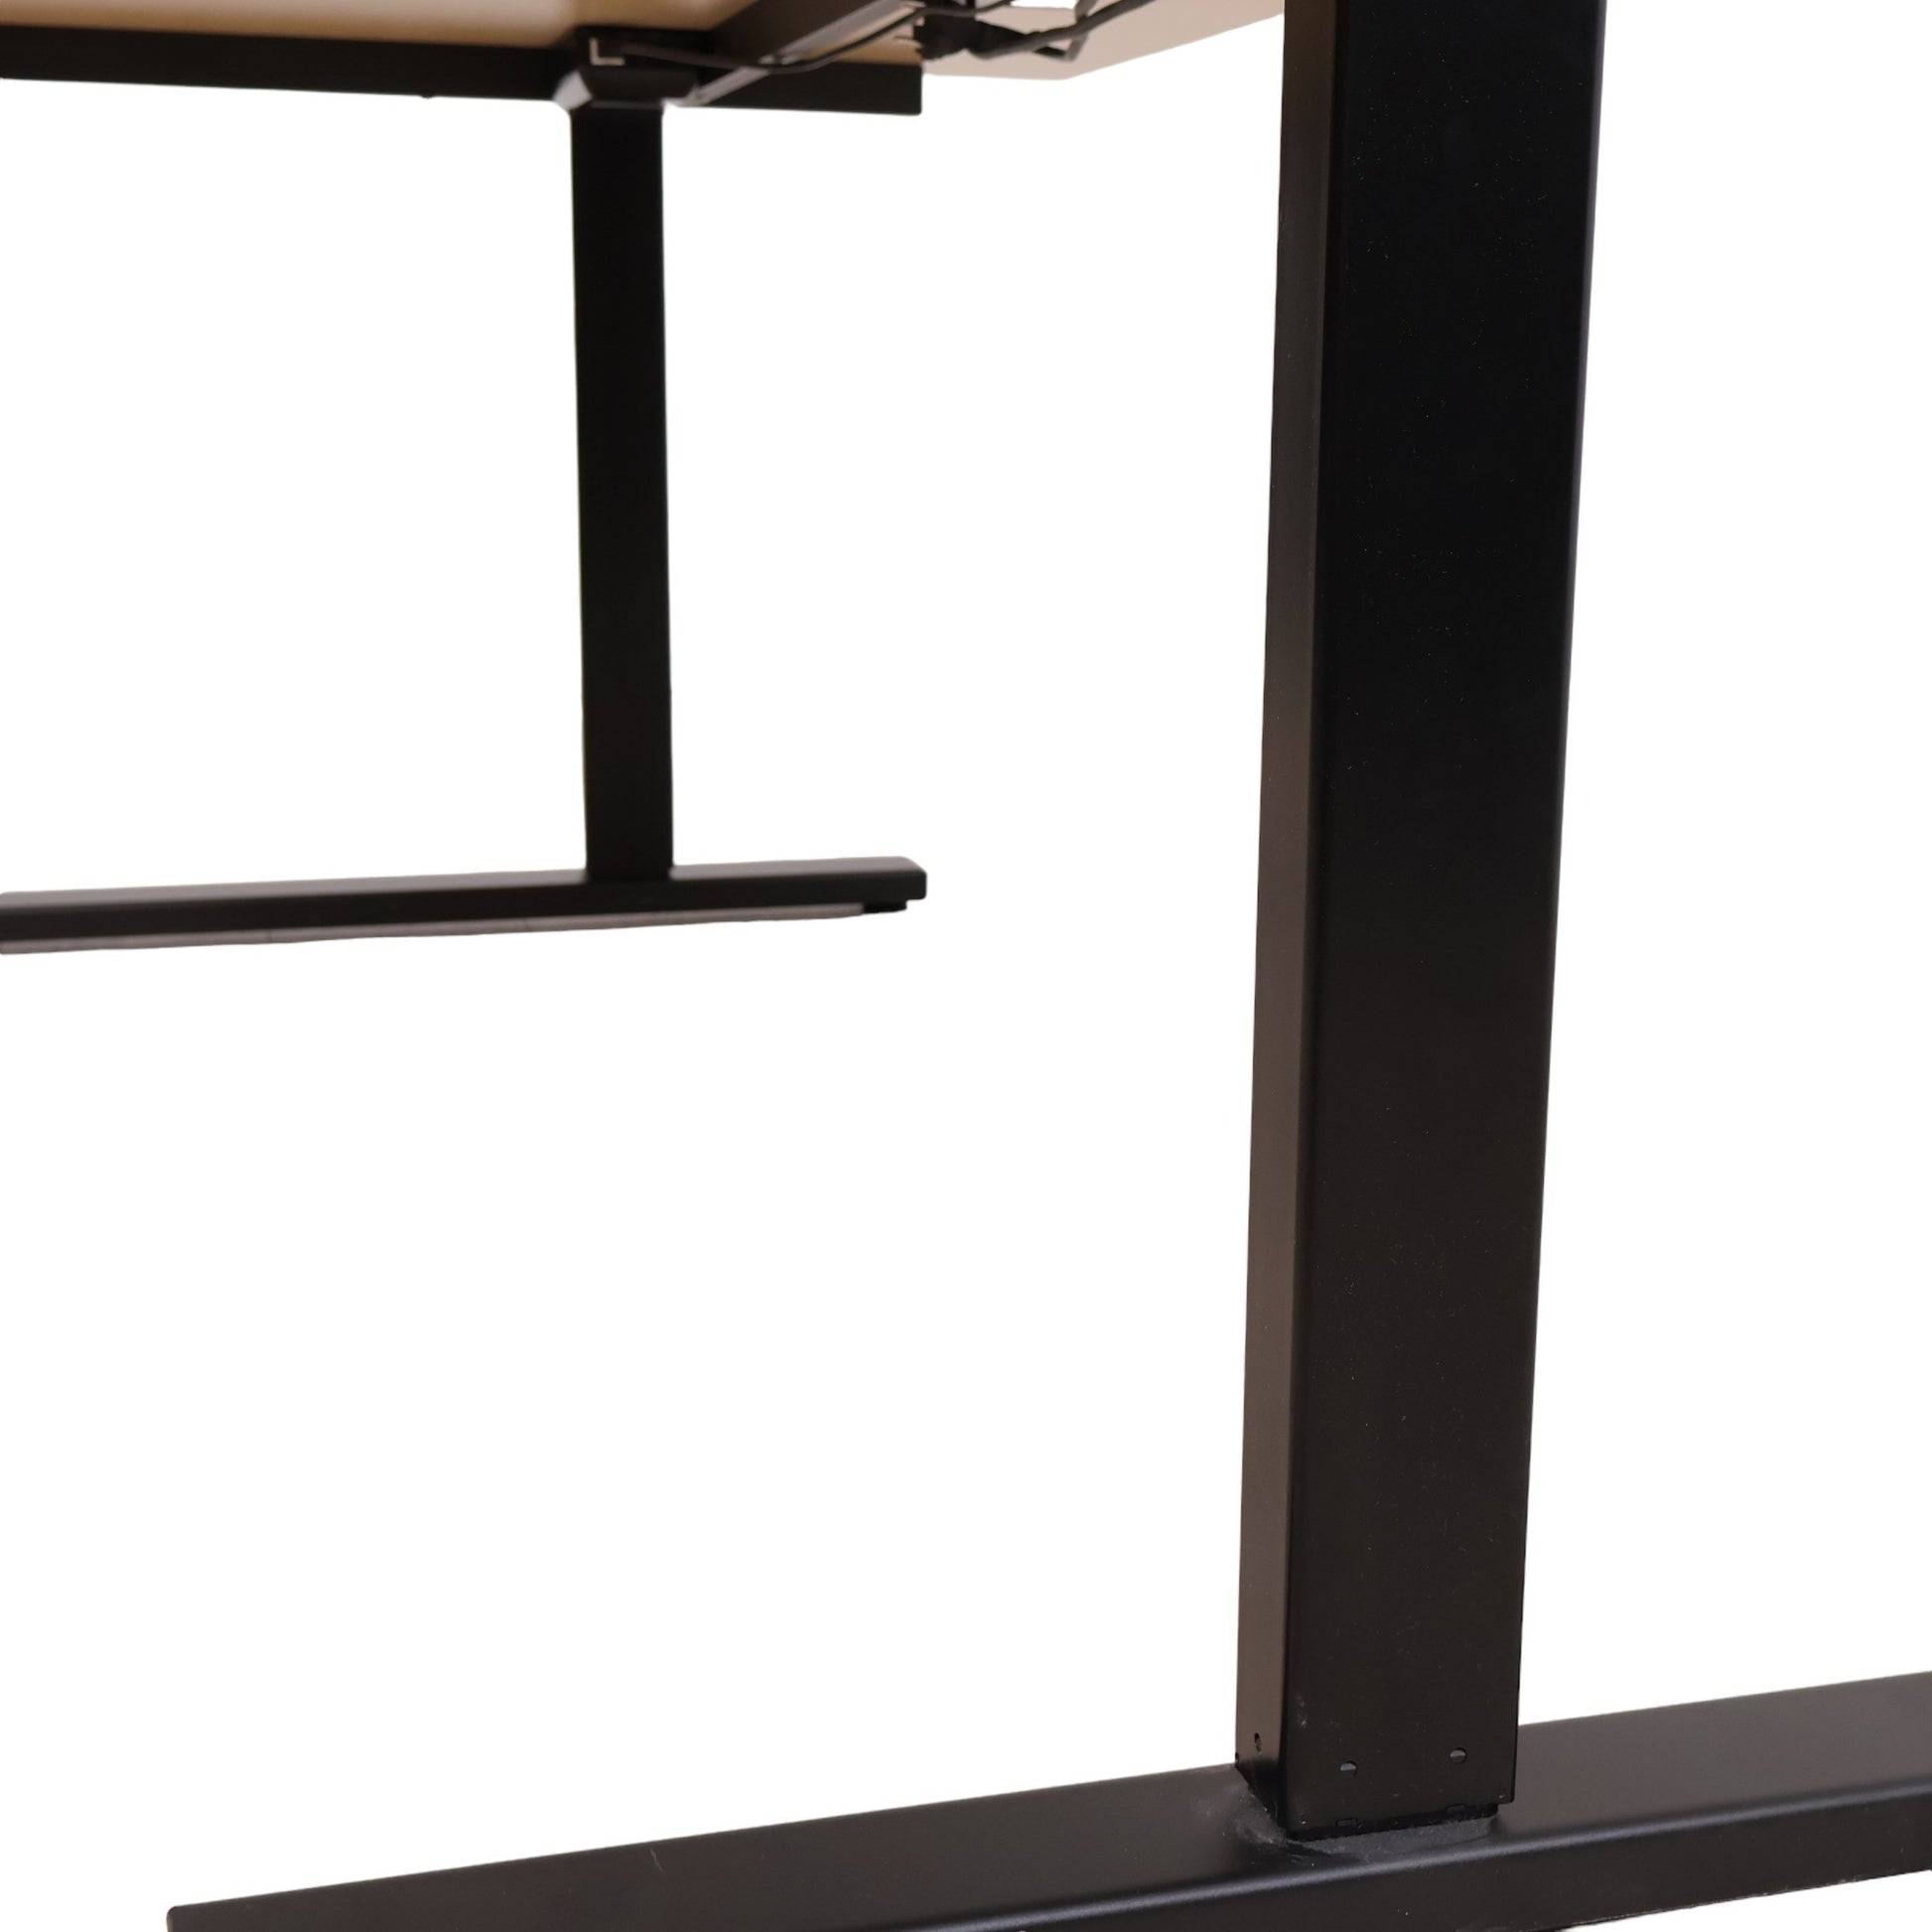 180x120 cm, Elektrisk hev/senk skrivebord med lys treplate og venstresving